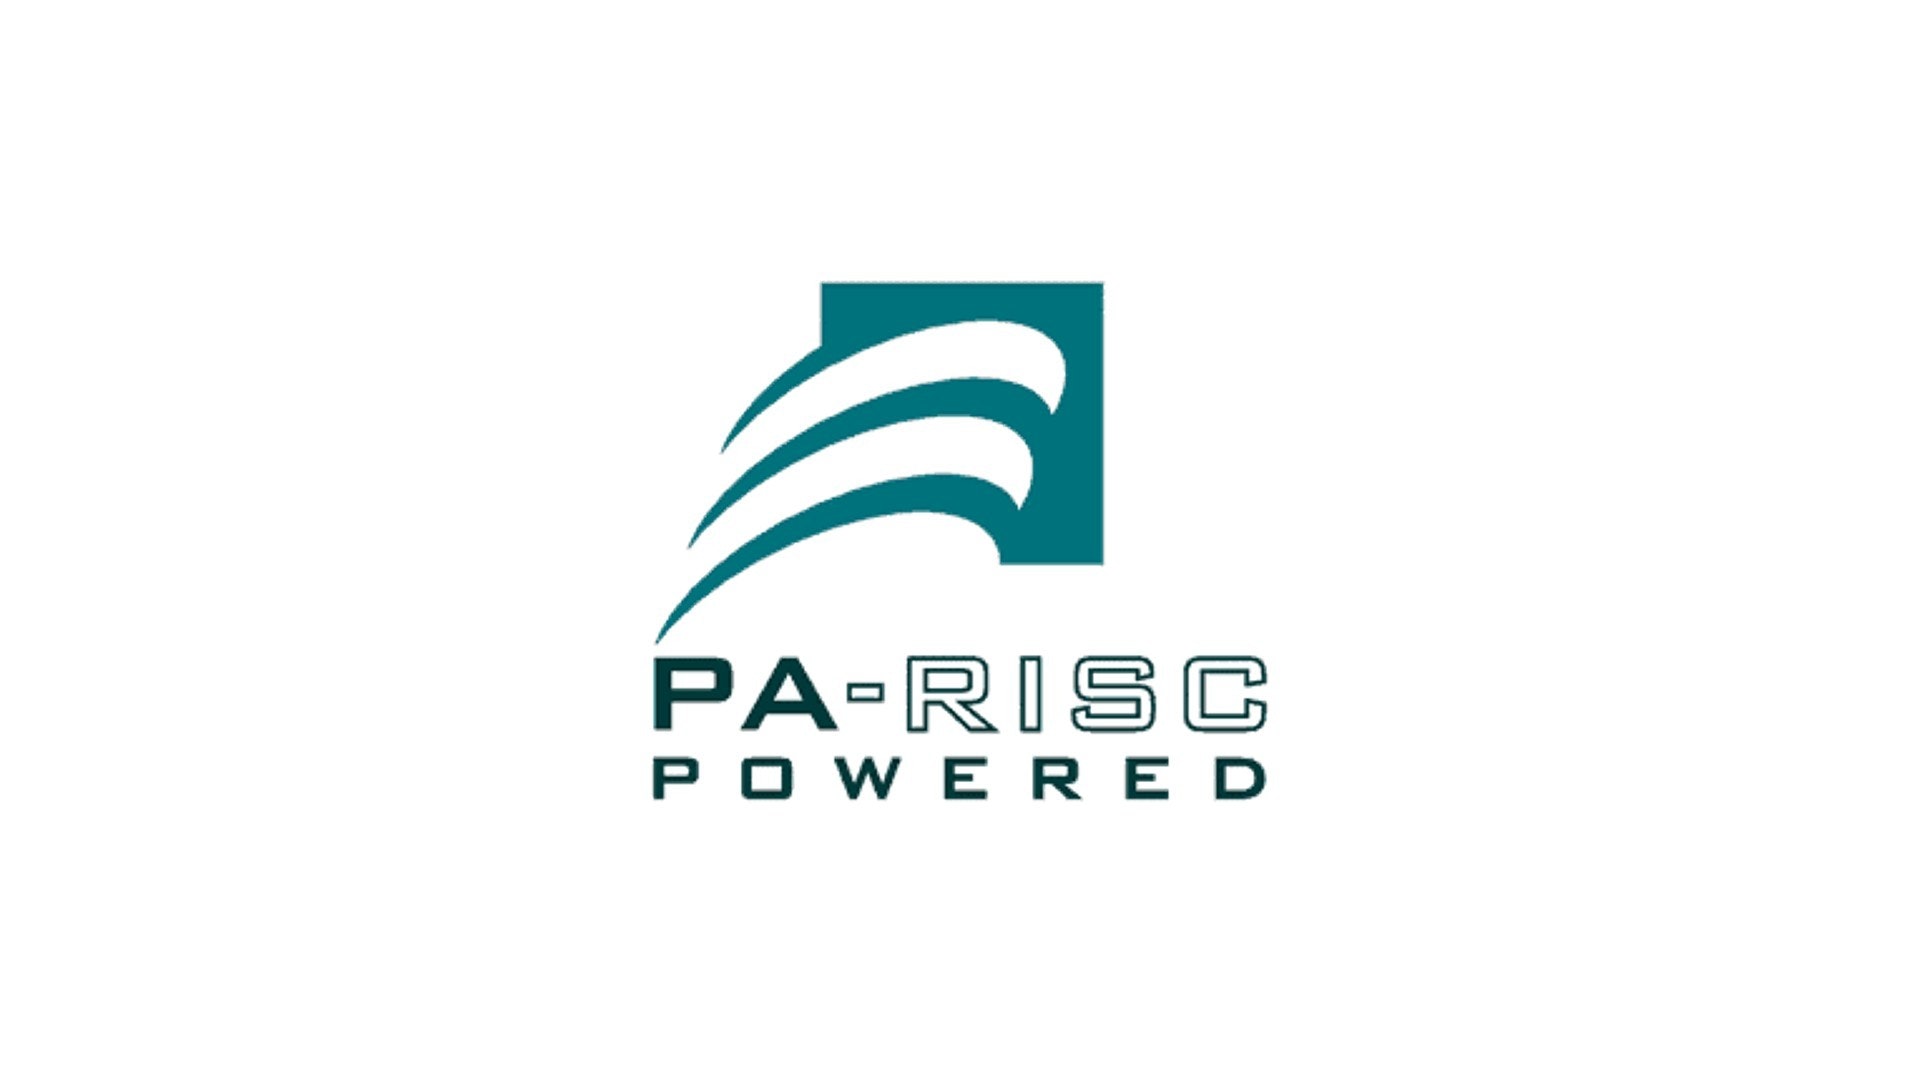 照片中提到了PA-RISC、POWE RED，跟玉米有關，包含了巴黎、產品設計、字形、PA-RISC、商標